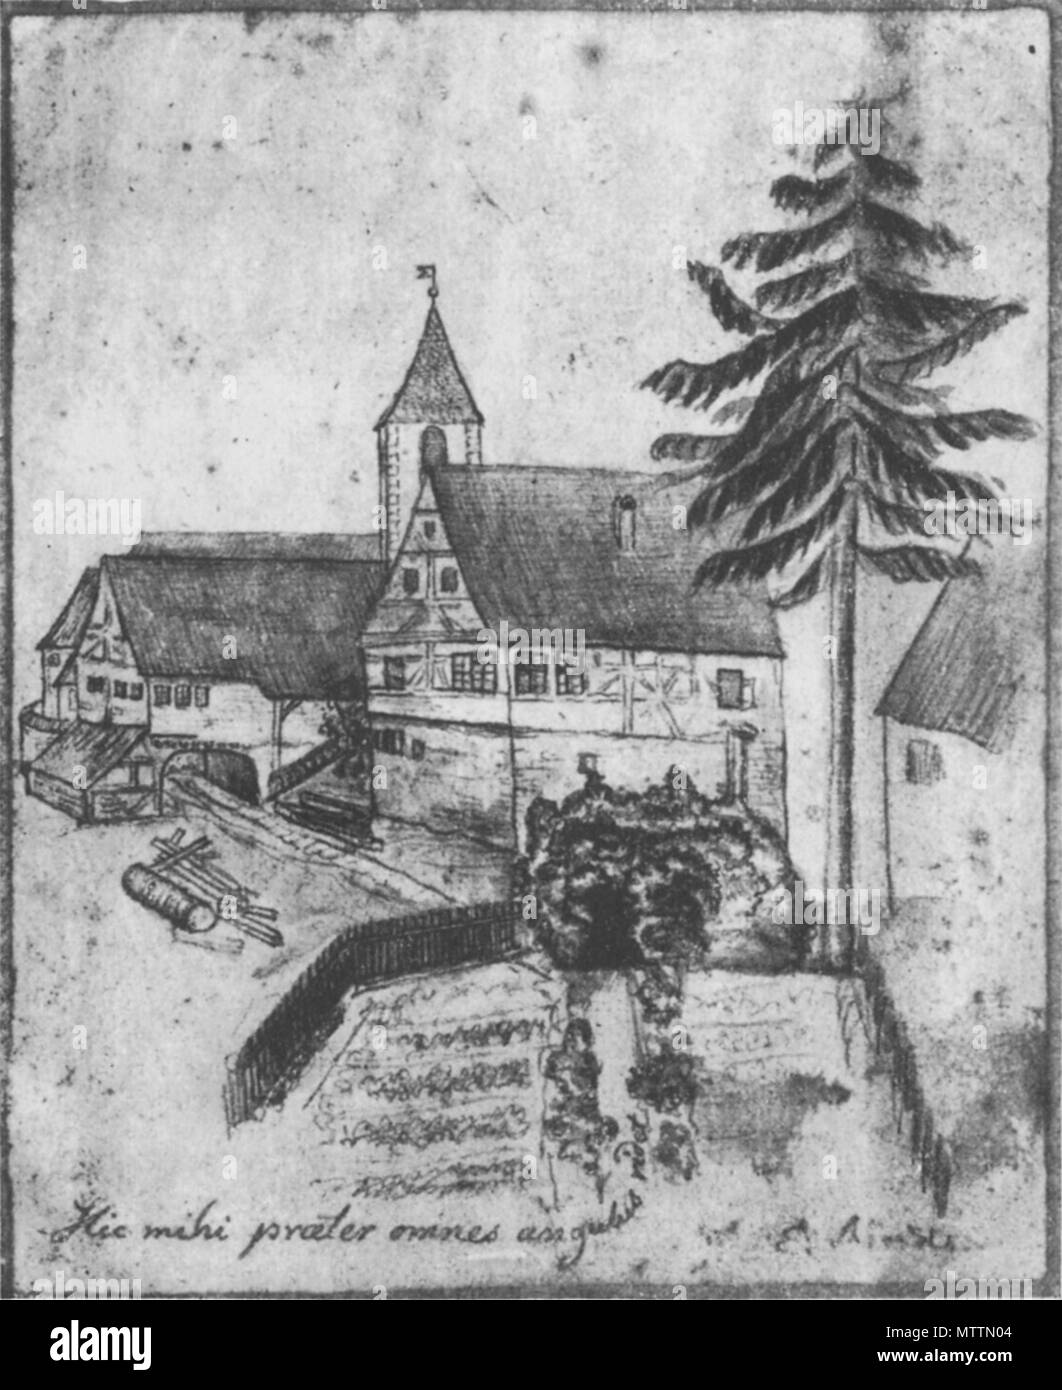 . Deutsch: Rathaus und Kirche in Plattenhardt, Zeichnung von de:Eduard Mörike, 1829 . 1829. de:Eduard Moerike 421 Moerike-plattenhardt1829 Stock Photo